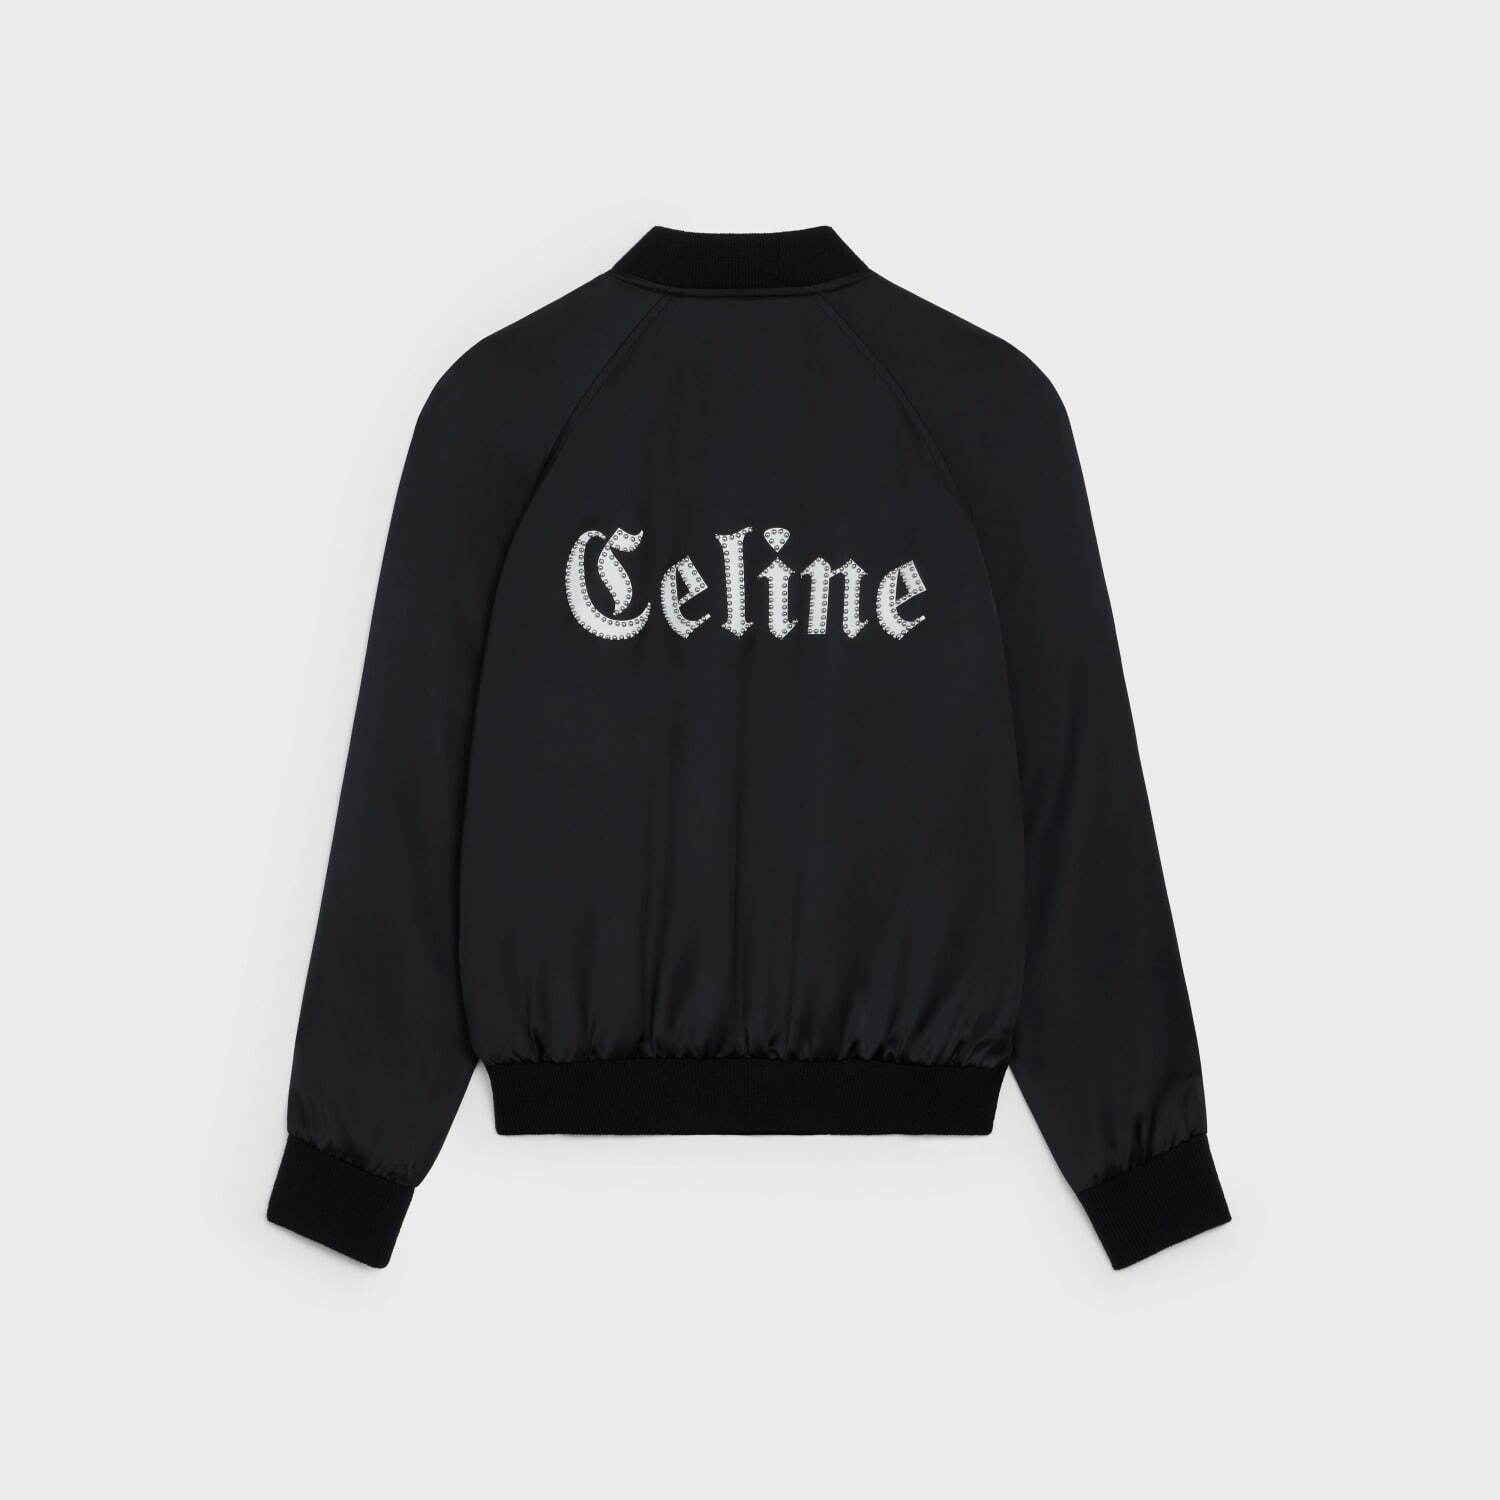 セリーヌ オム“ゴシック調ロゴ”の限定Tシャツやブルゾン、アート